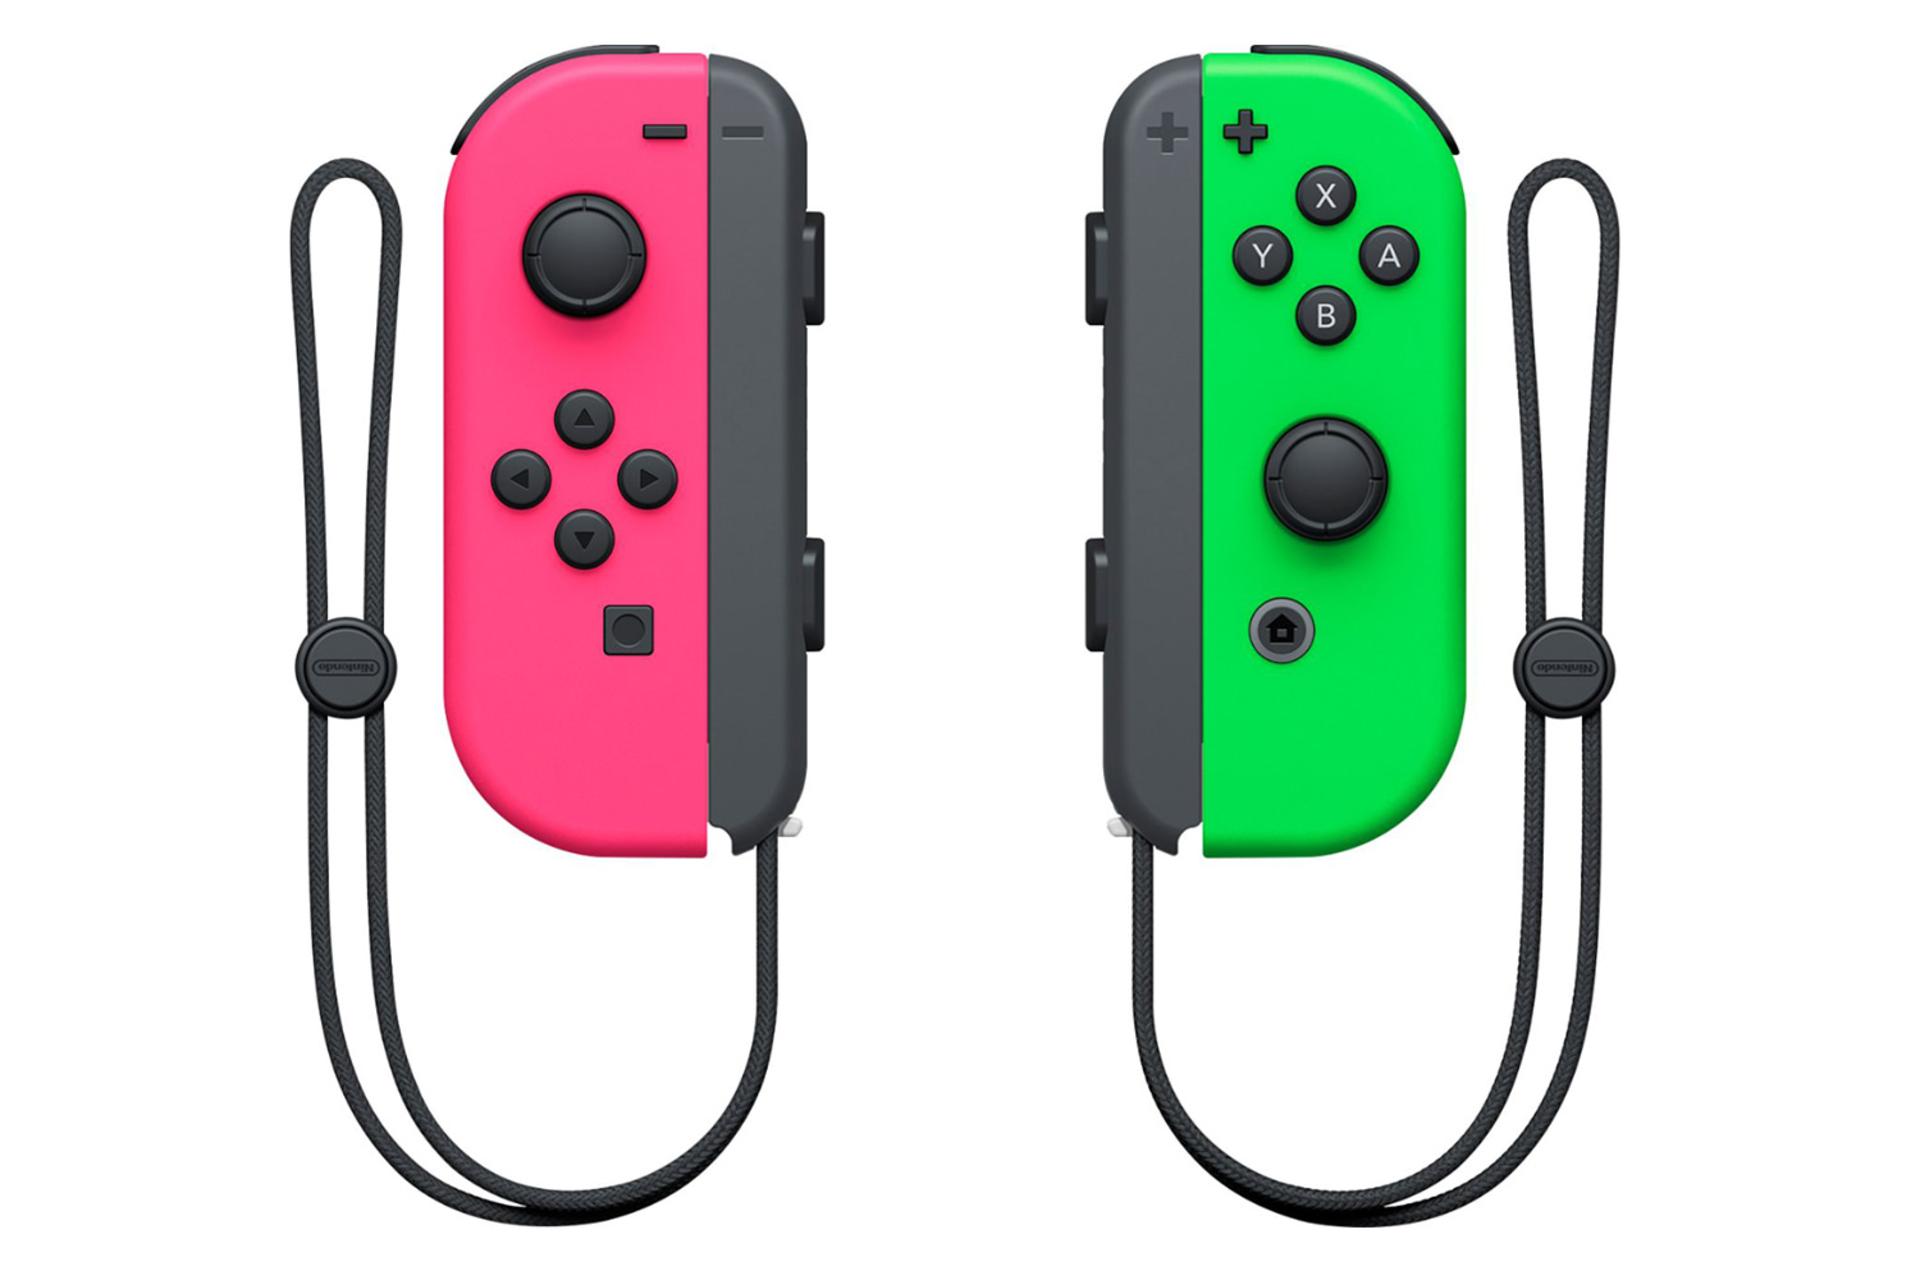 دسته بازی نینتندو جوی کان Nintendo Joy-Con نمای بالا رنگ صورتی و سبز